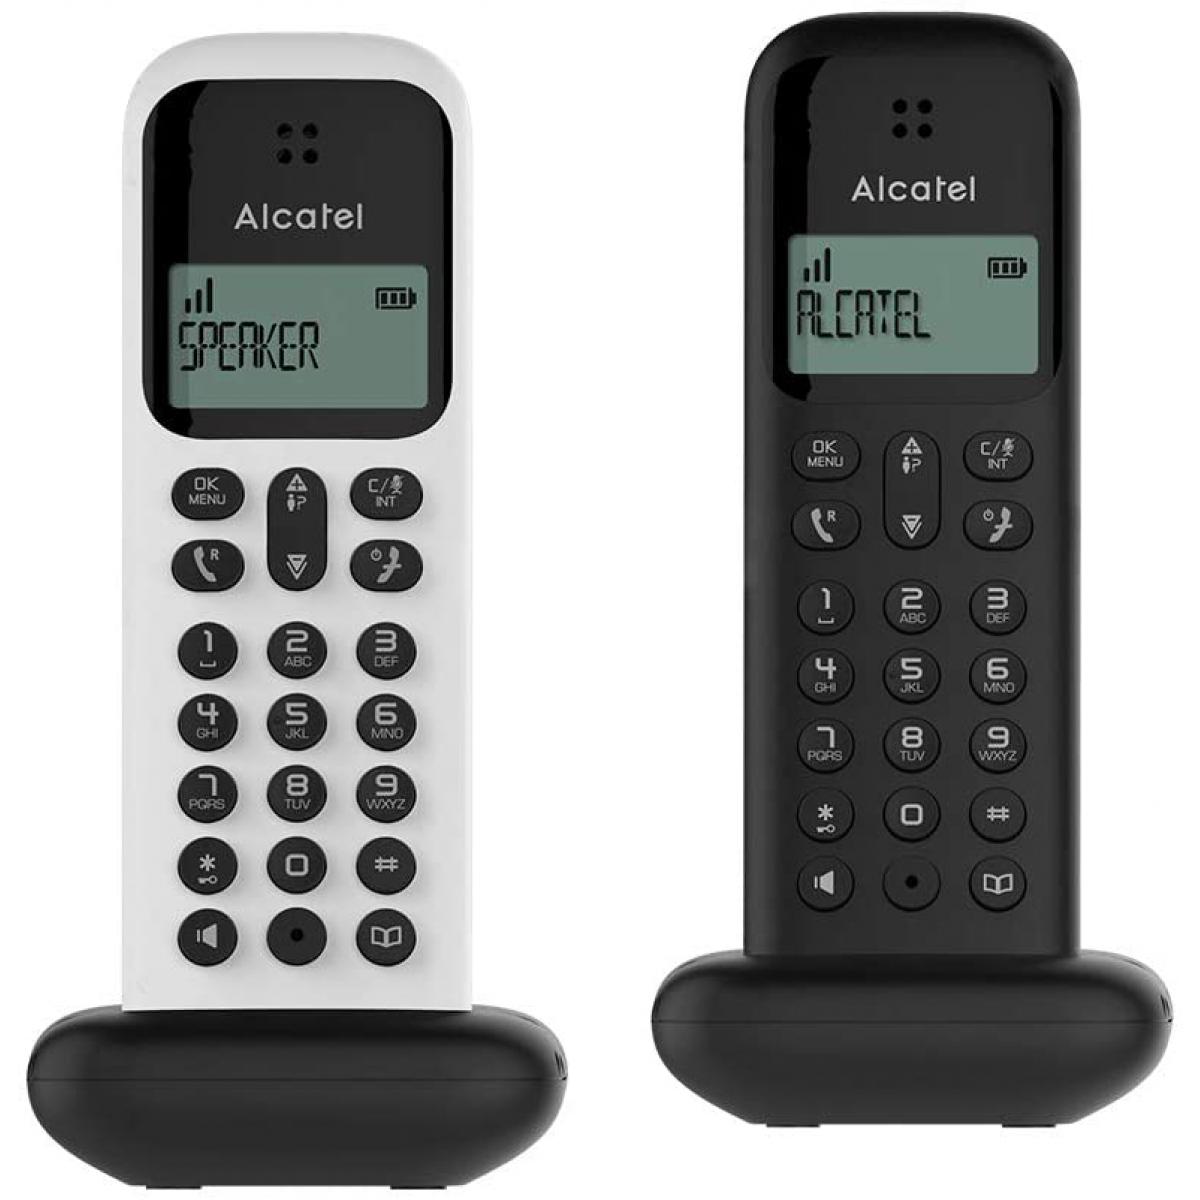 Alcatel - telephone DUO sans fil avec fonction mains libres noir et blanc - Téléphone fixe filaire